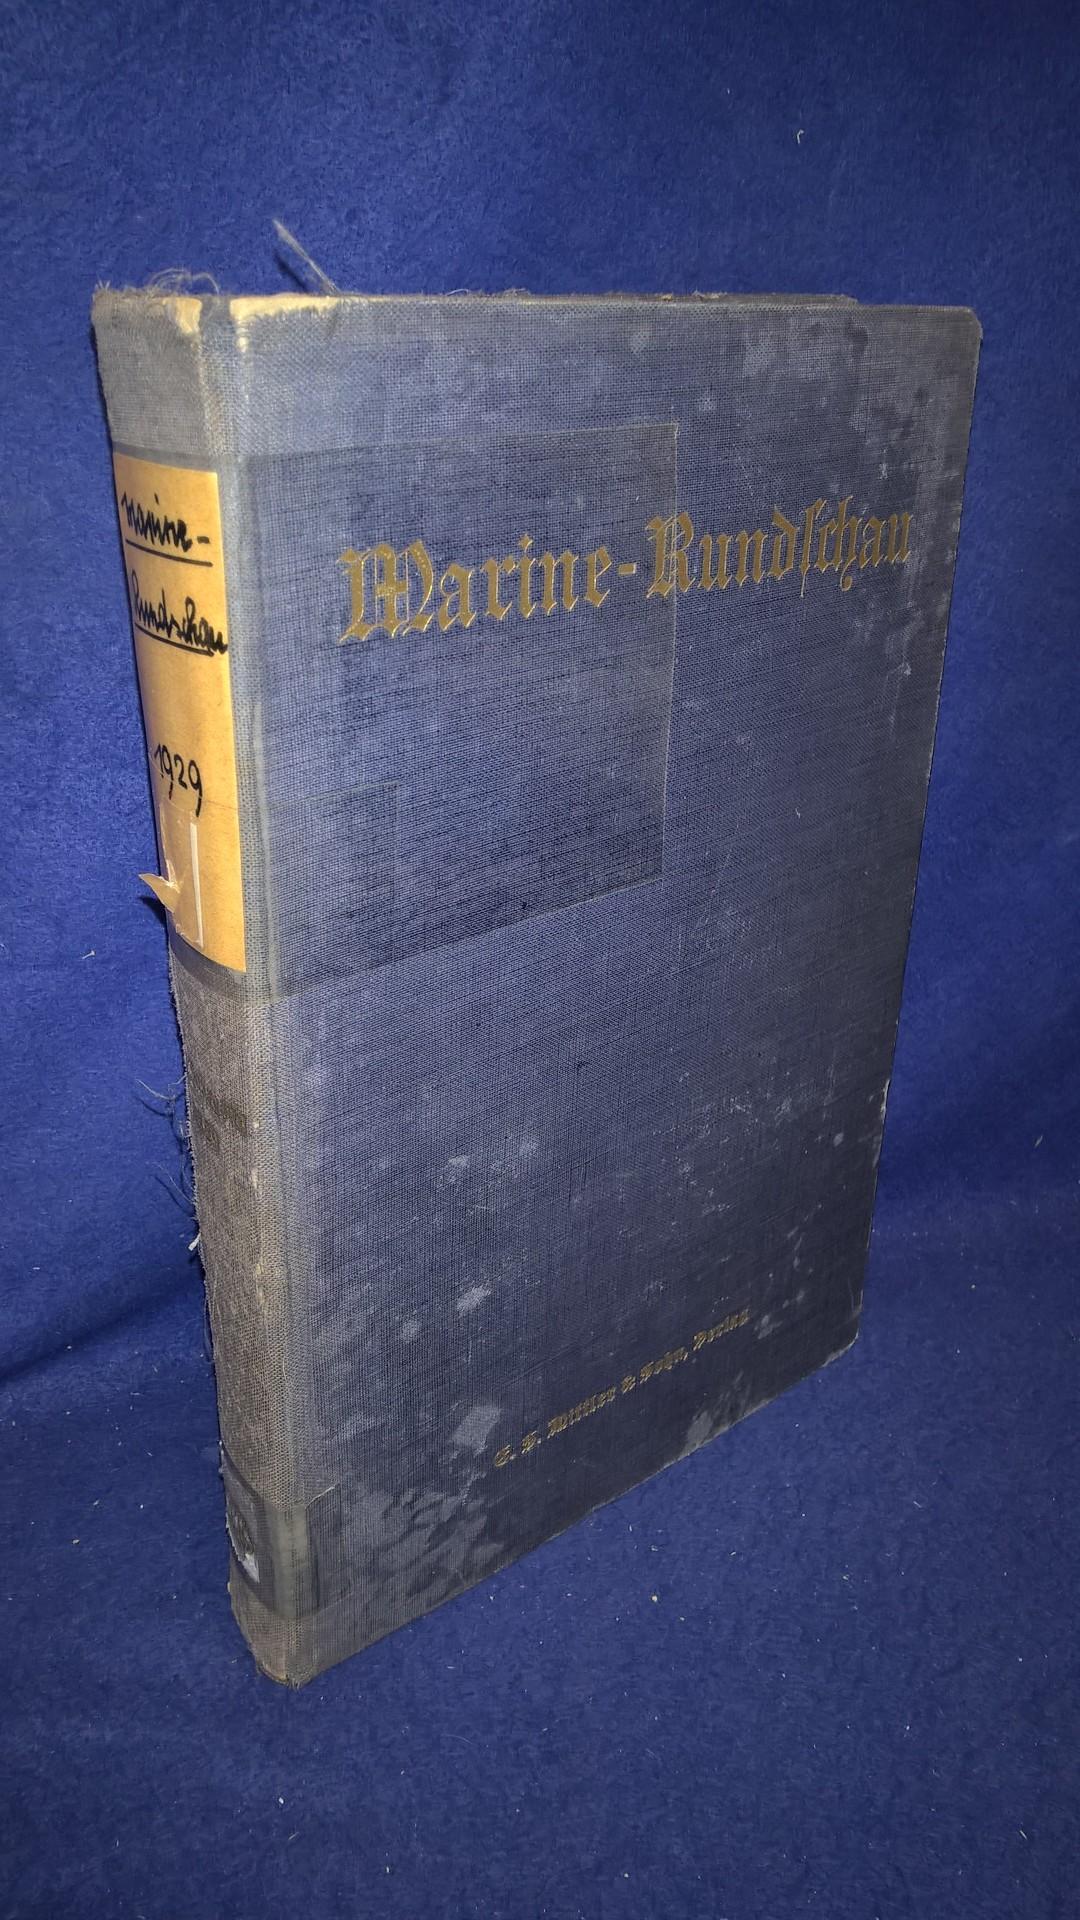 Marine-Rundschau, Monatsschrift für Seewesen. Kompletter Jahresband 1929.